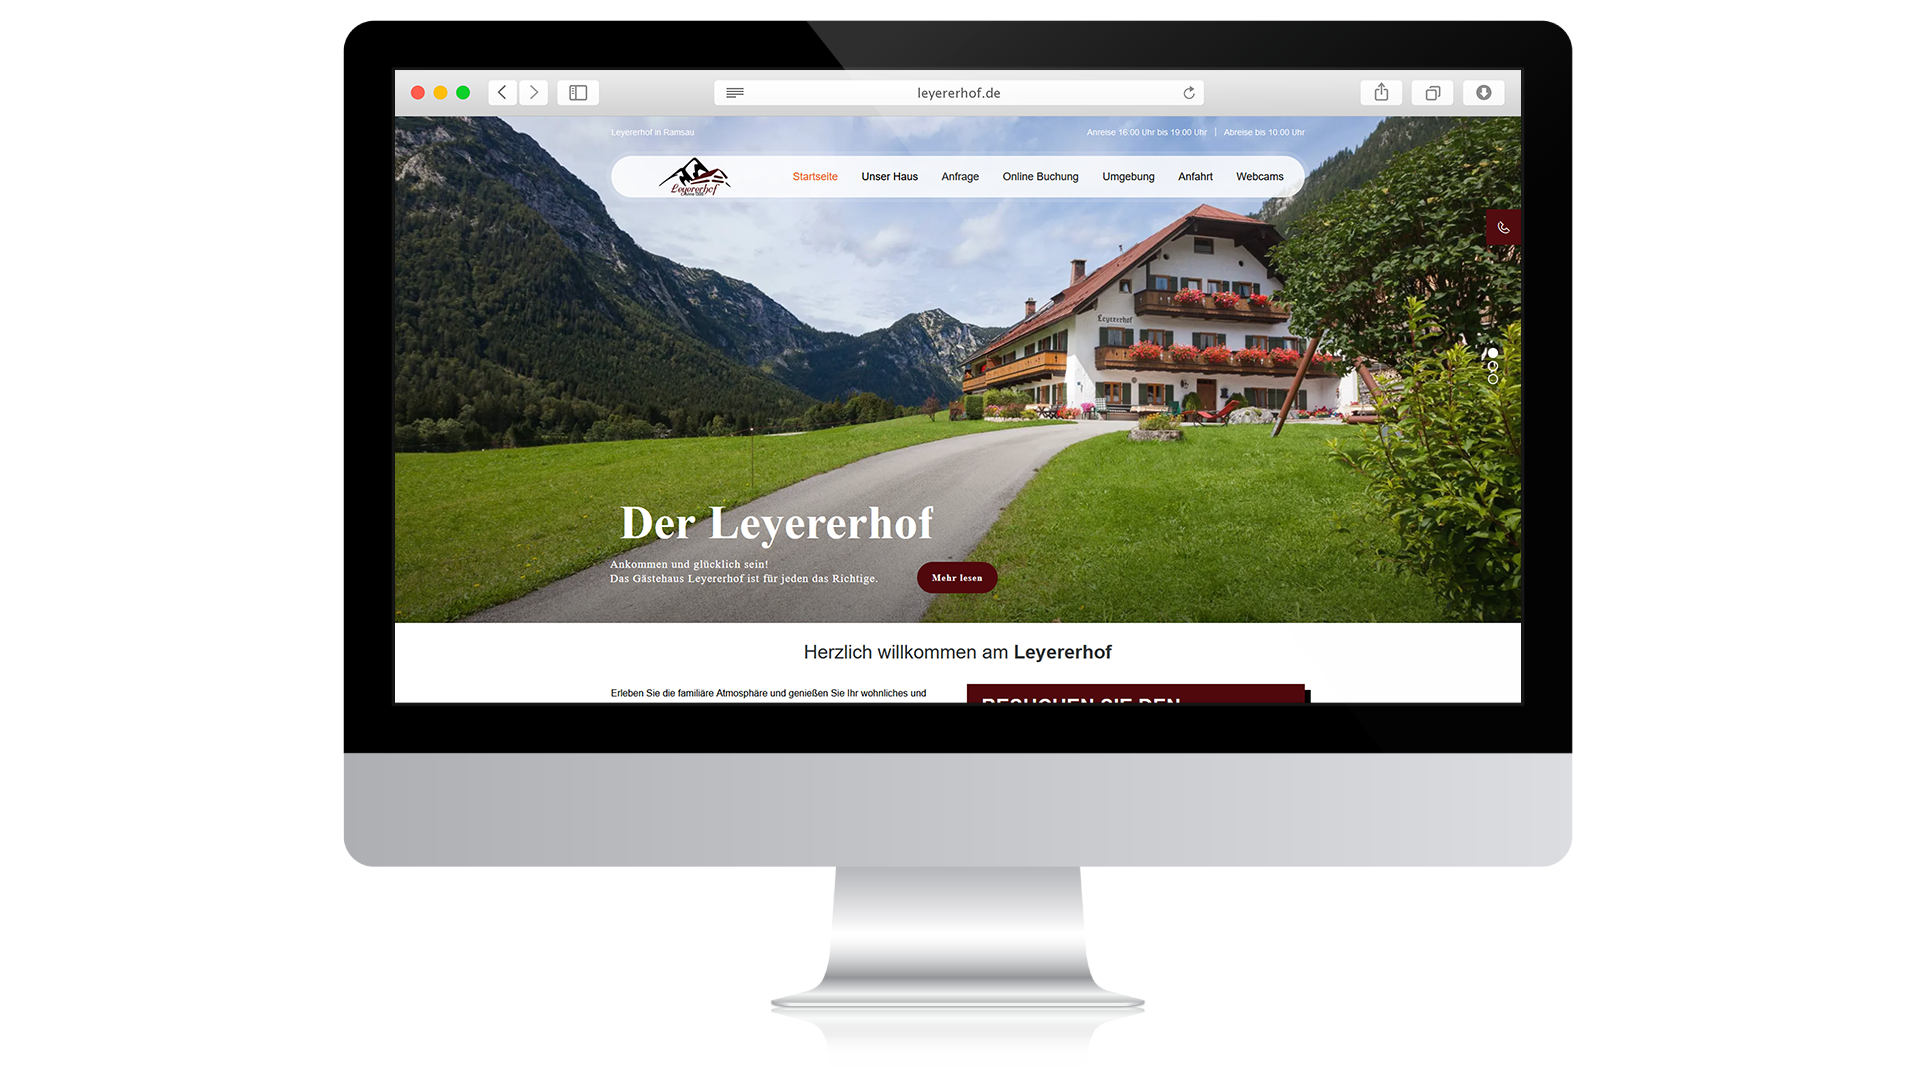 Leyererhof Impression Desktop Startseite